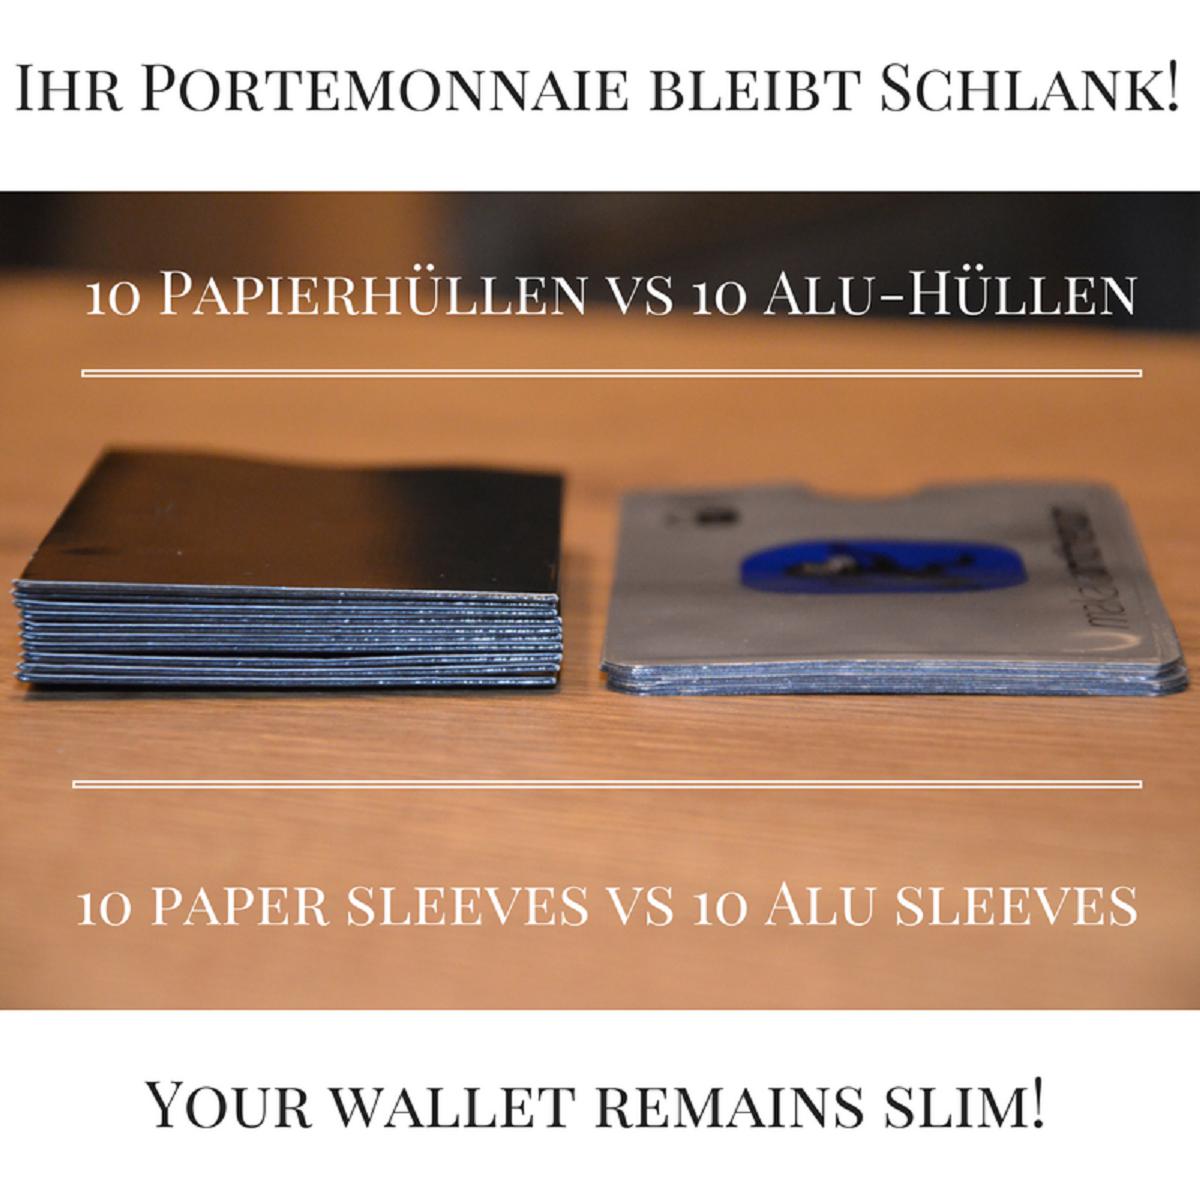 Kreditkartenhülle abgeschirmt RFID & NFC - EC Karten Schutzhülle Kartenhülle  Schutz Blocker Karte fürs Portemonnaie, € 2,- (1160 Wien) - willhaben